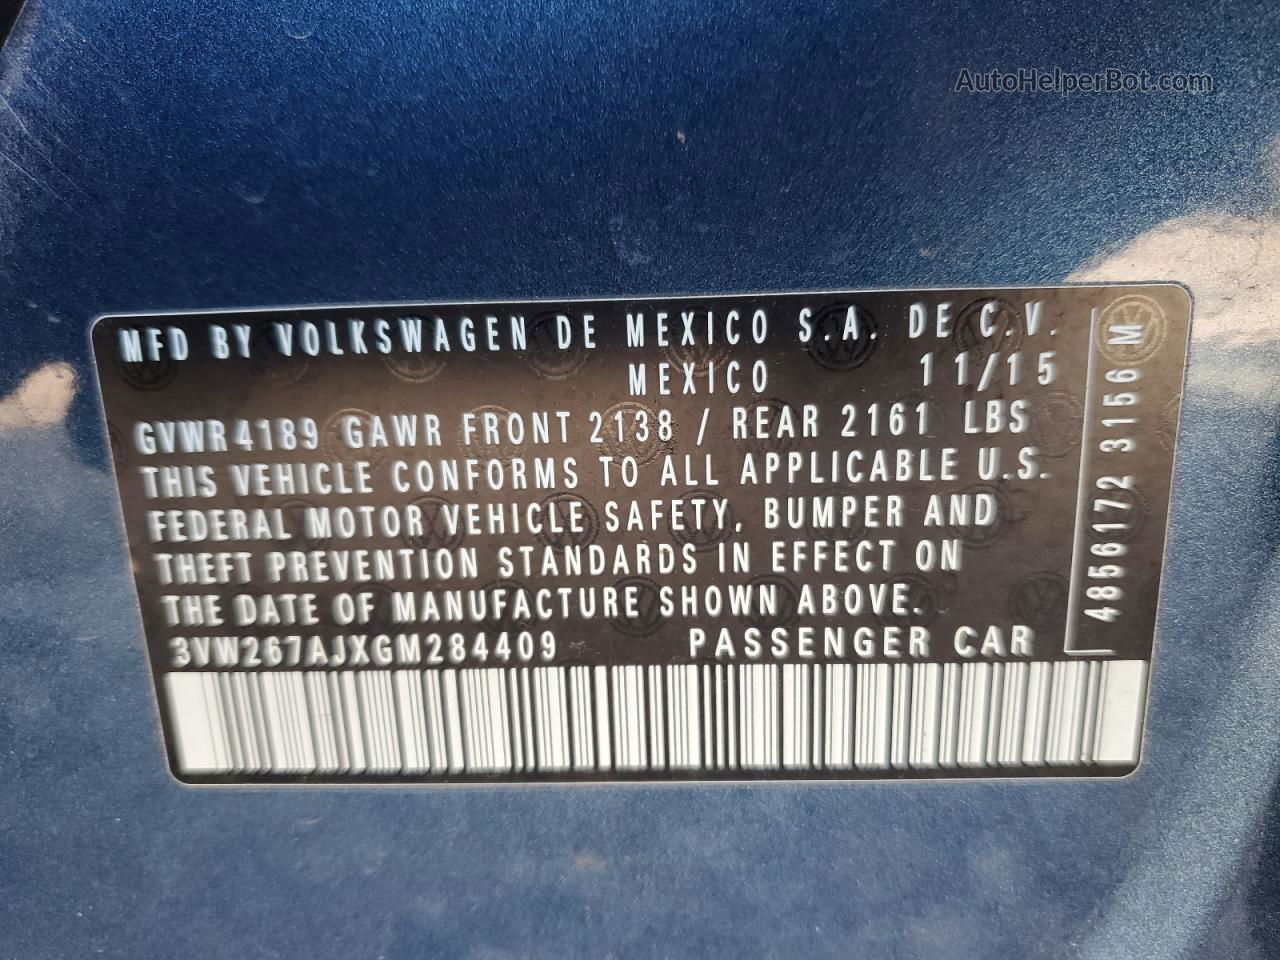 2016 Volkswagen Jetta S Синий vin: 3VW267AJXGM284409